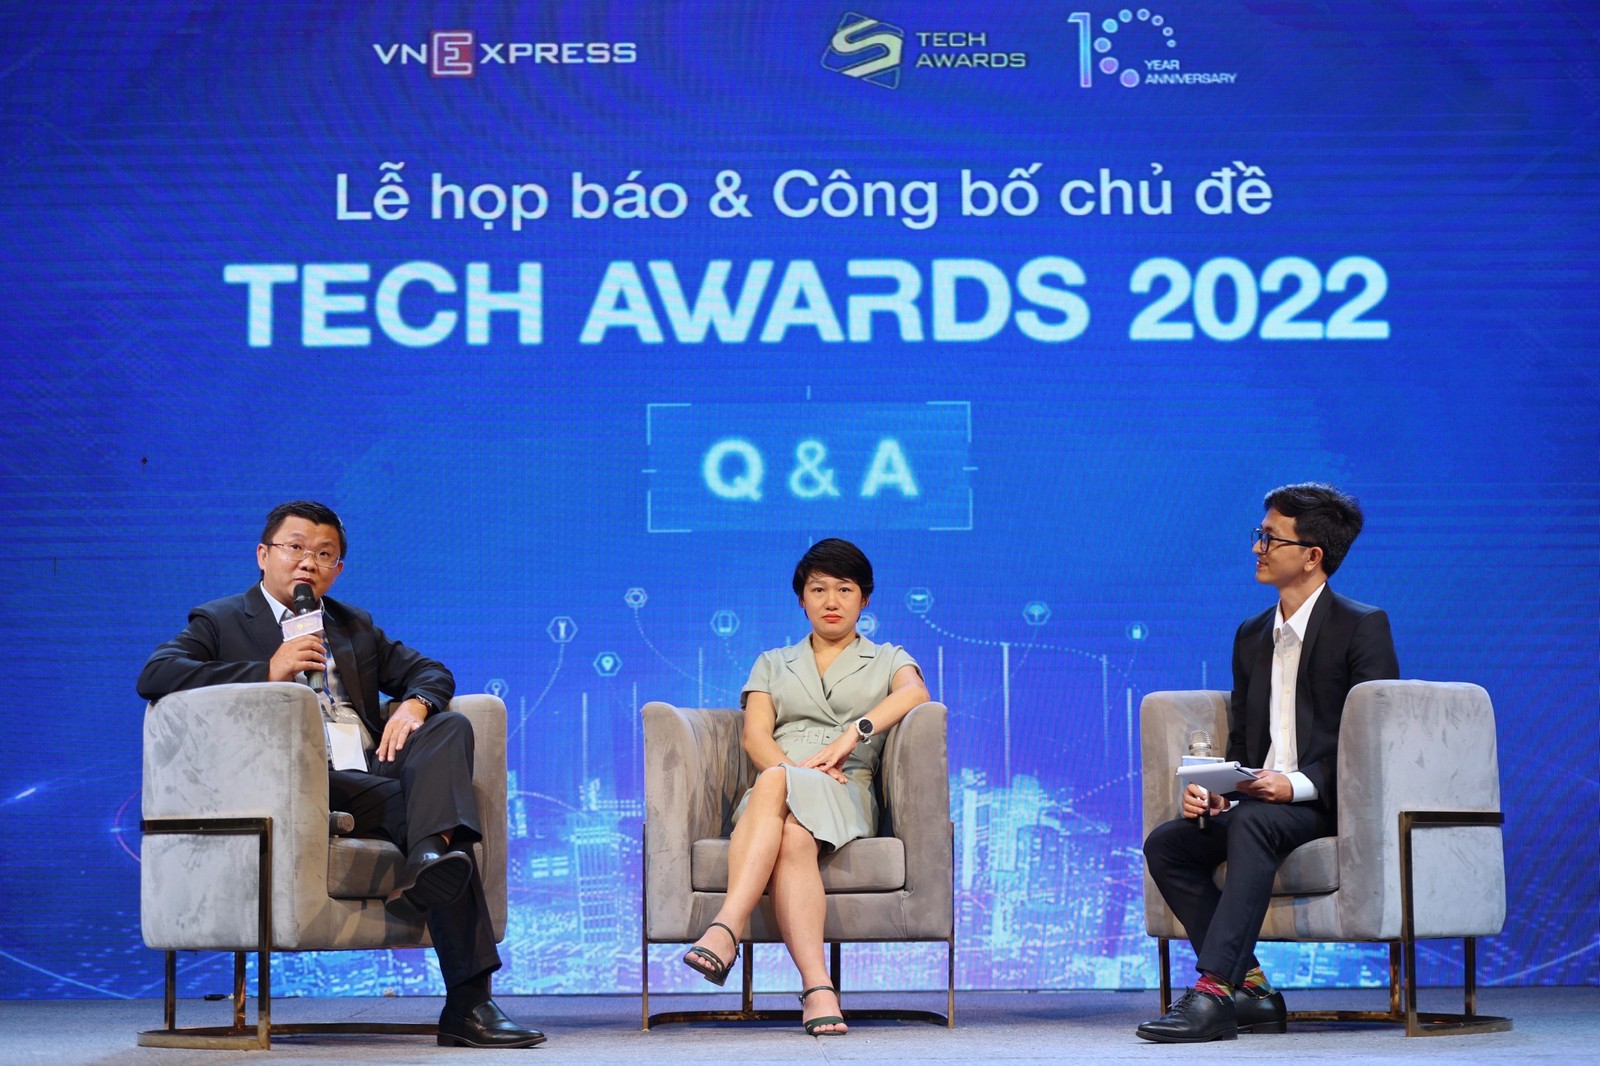 Tech Awards bước sang năm thứ 10 tổ chức